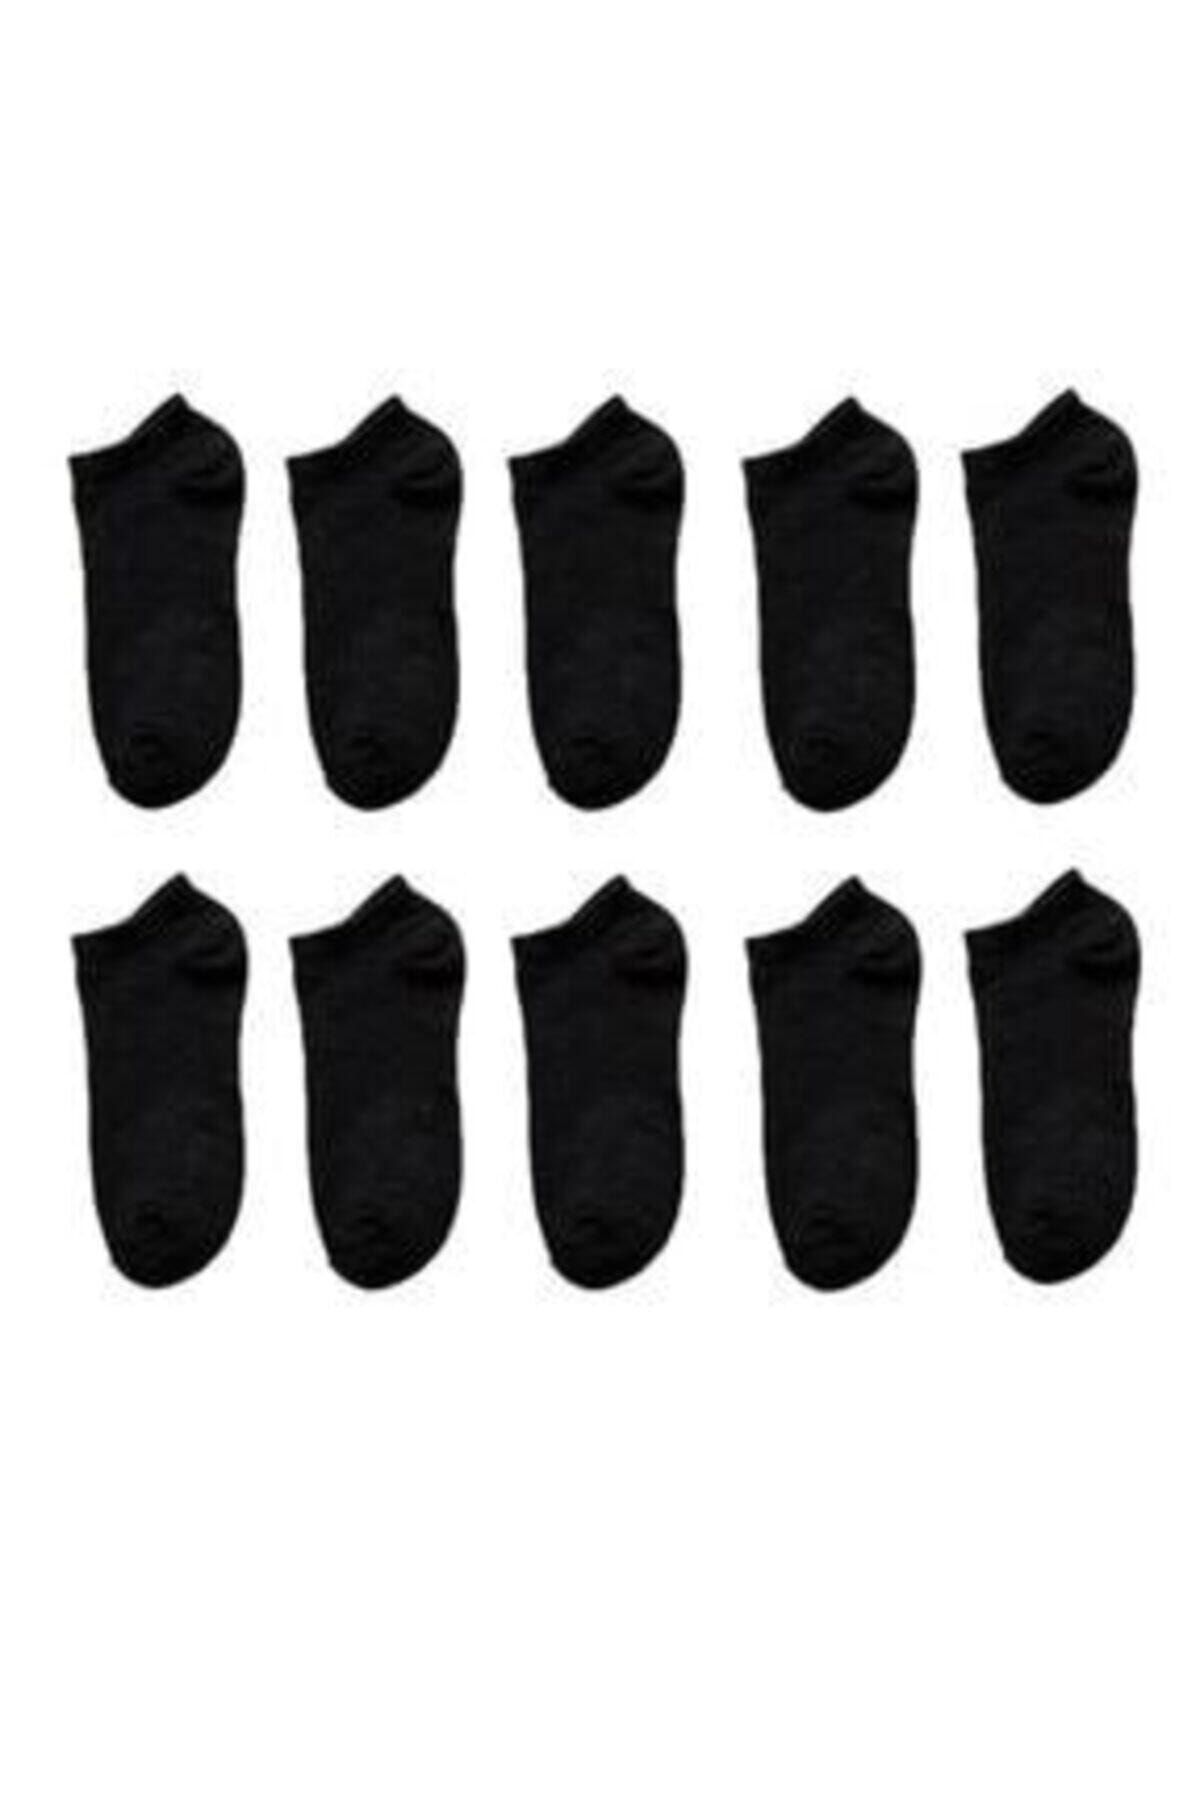 FUBA Aksesuar Erkek Siyah Görünmez Çorap Seti 10lu